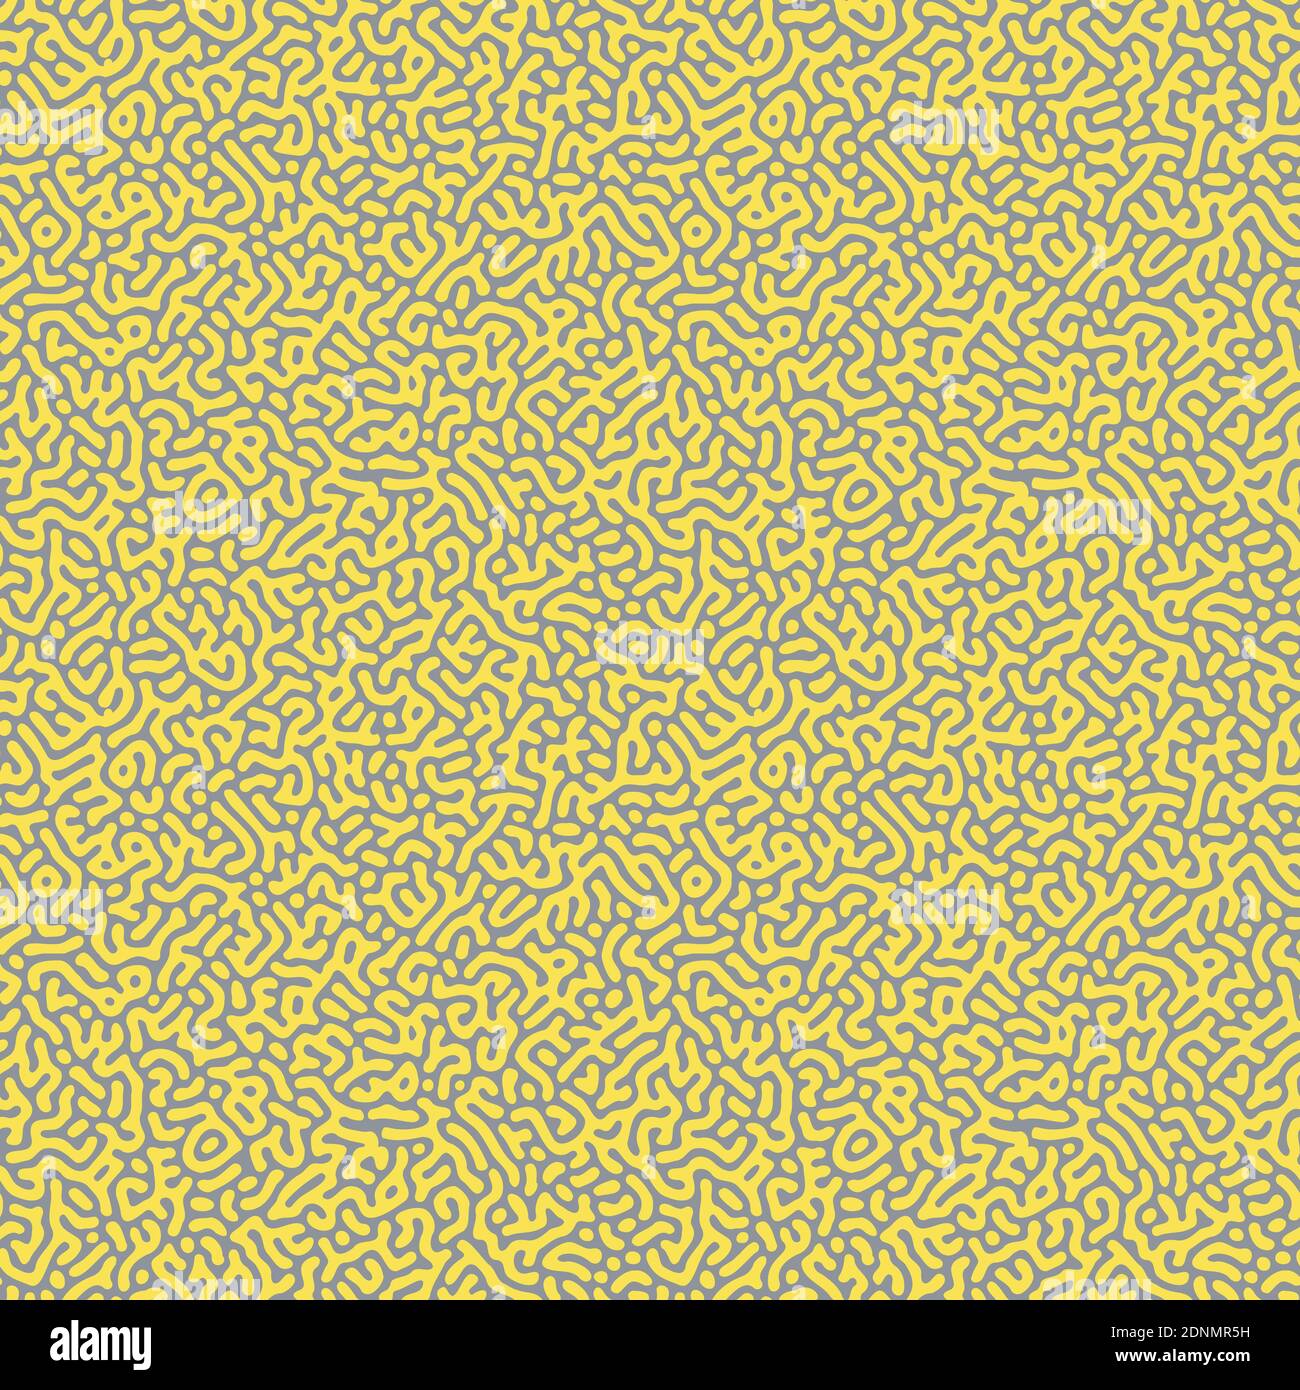 Nahtlose Turing Muster Vektor-Illustration in den Farben des Jahres 2021, ultimative grau und leuchtend gelb. Memphis Design Stil Hintergrund Wallpap Stock Vektor